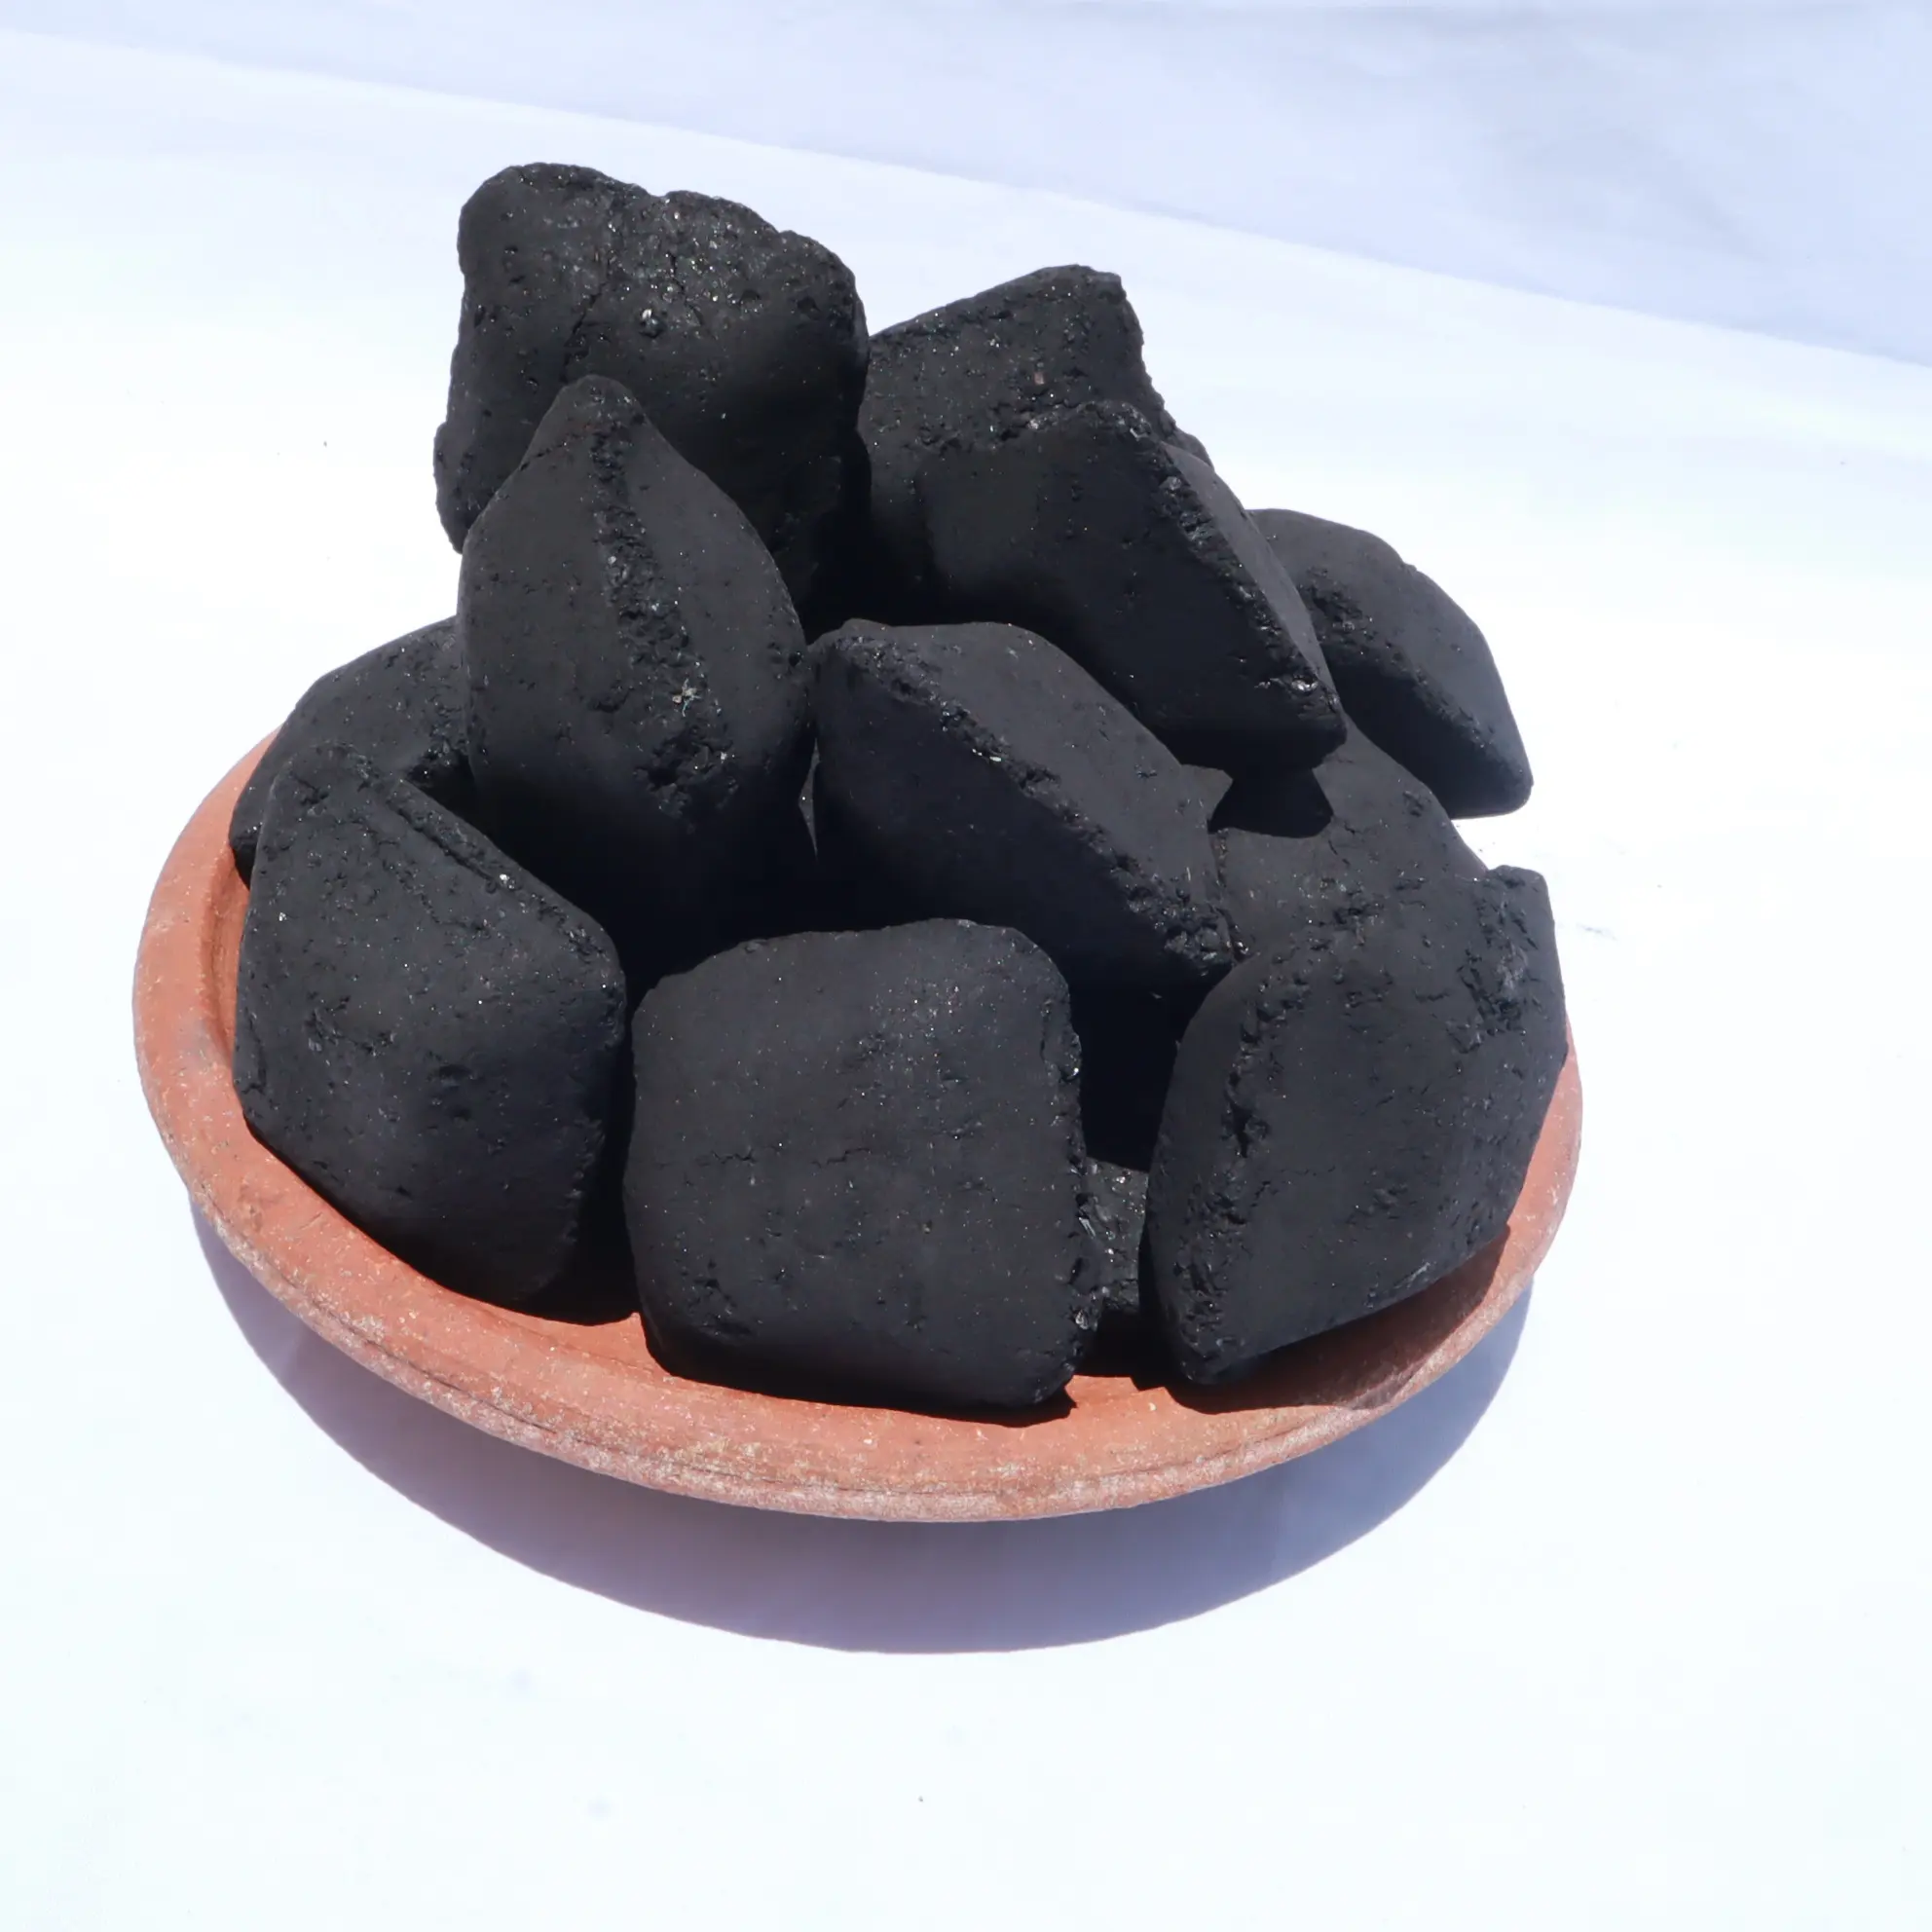 Les meilleures ventes sous la teneur en cendres de 10% Briquettes de charbon de coco biologique accumulées Meilleures pour les grillades et le barbecue